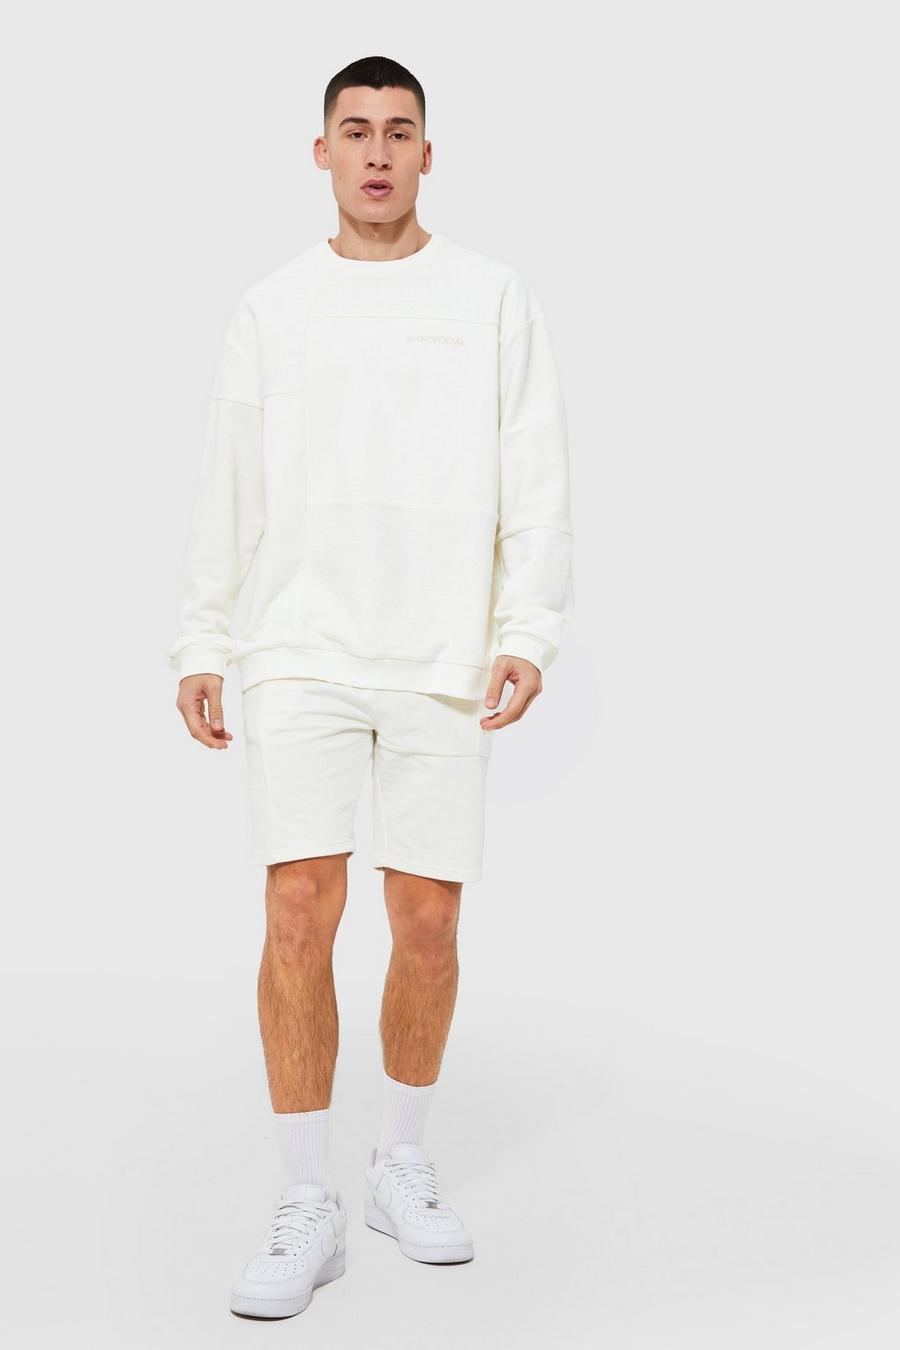 שמנת blanco חליפת טרנינג אוברסייז שורט עם טלאים, סדרת Man